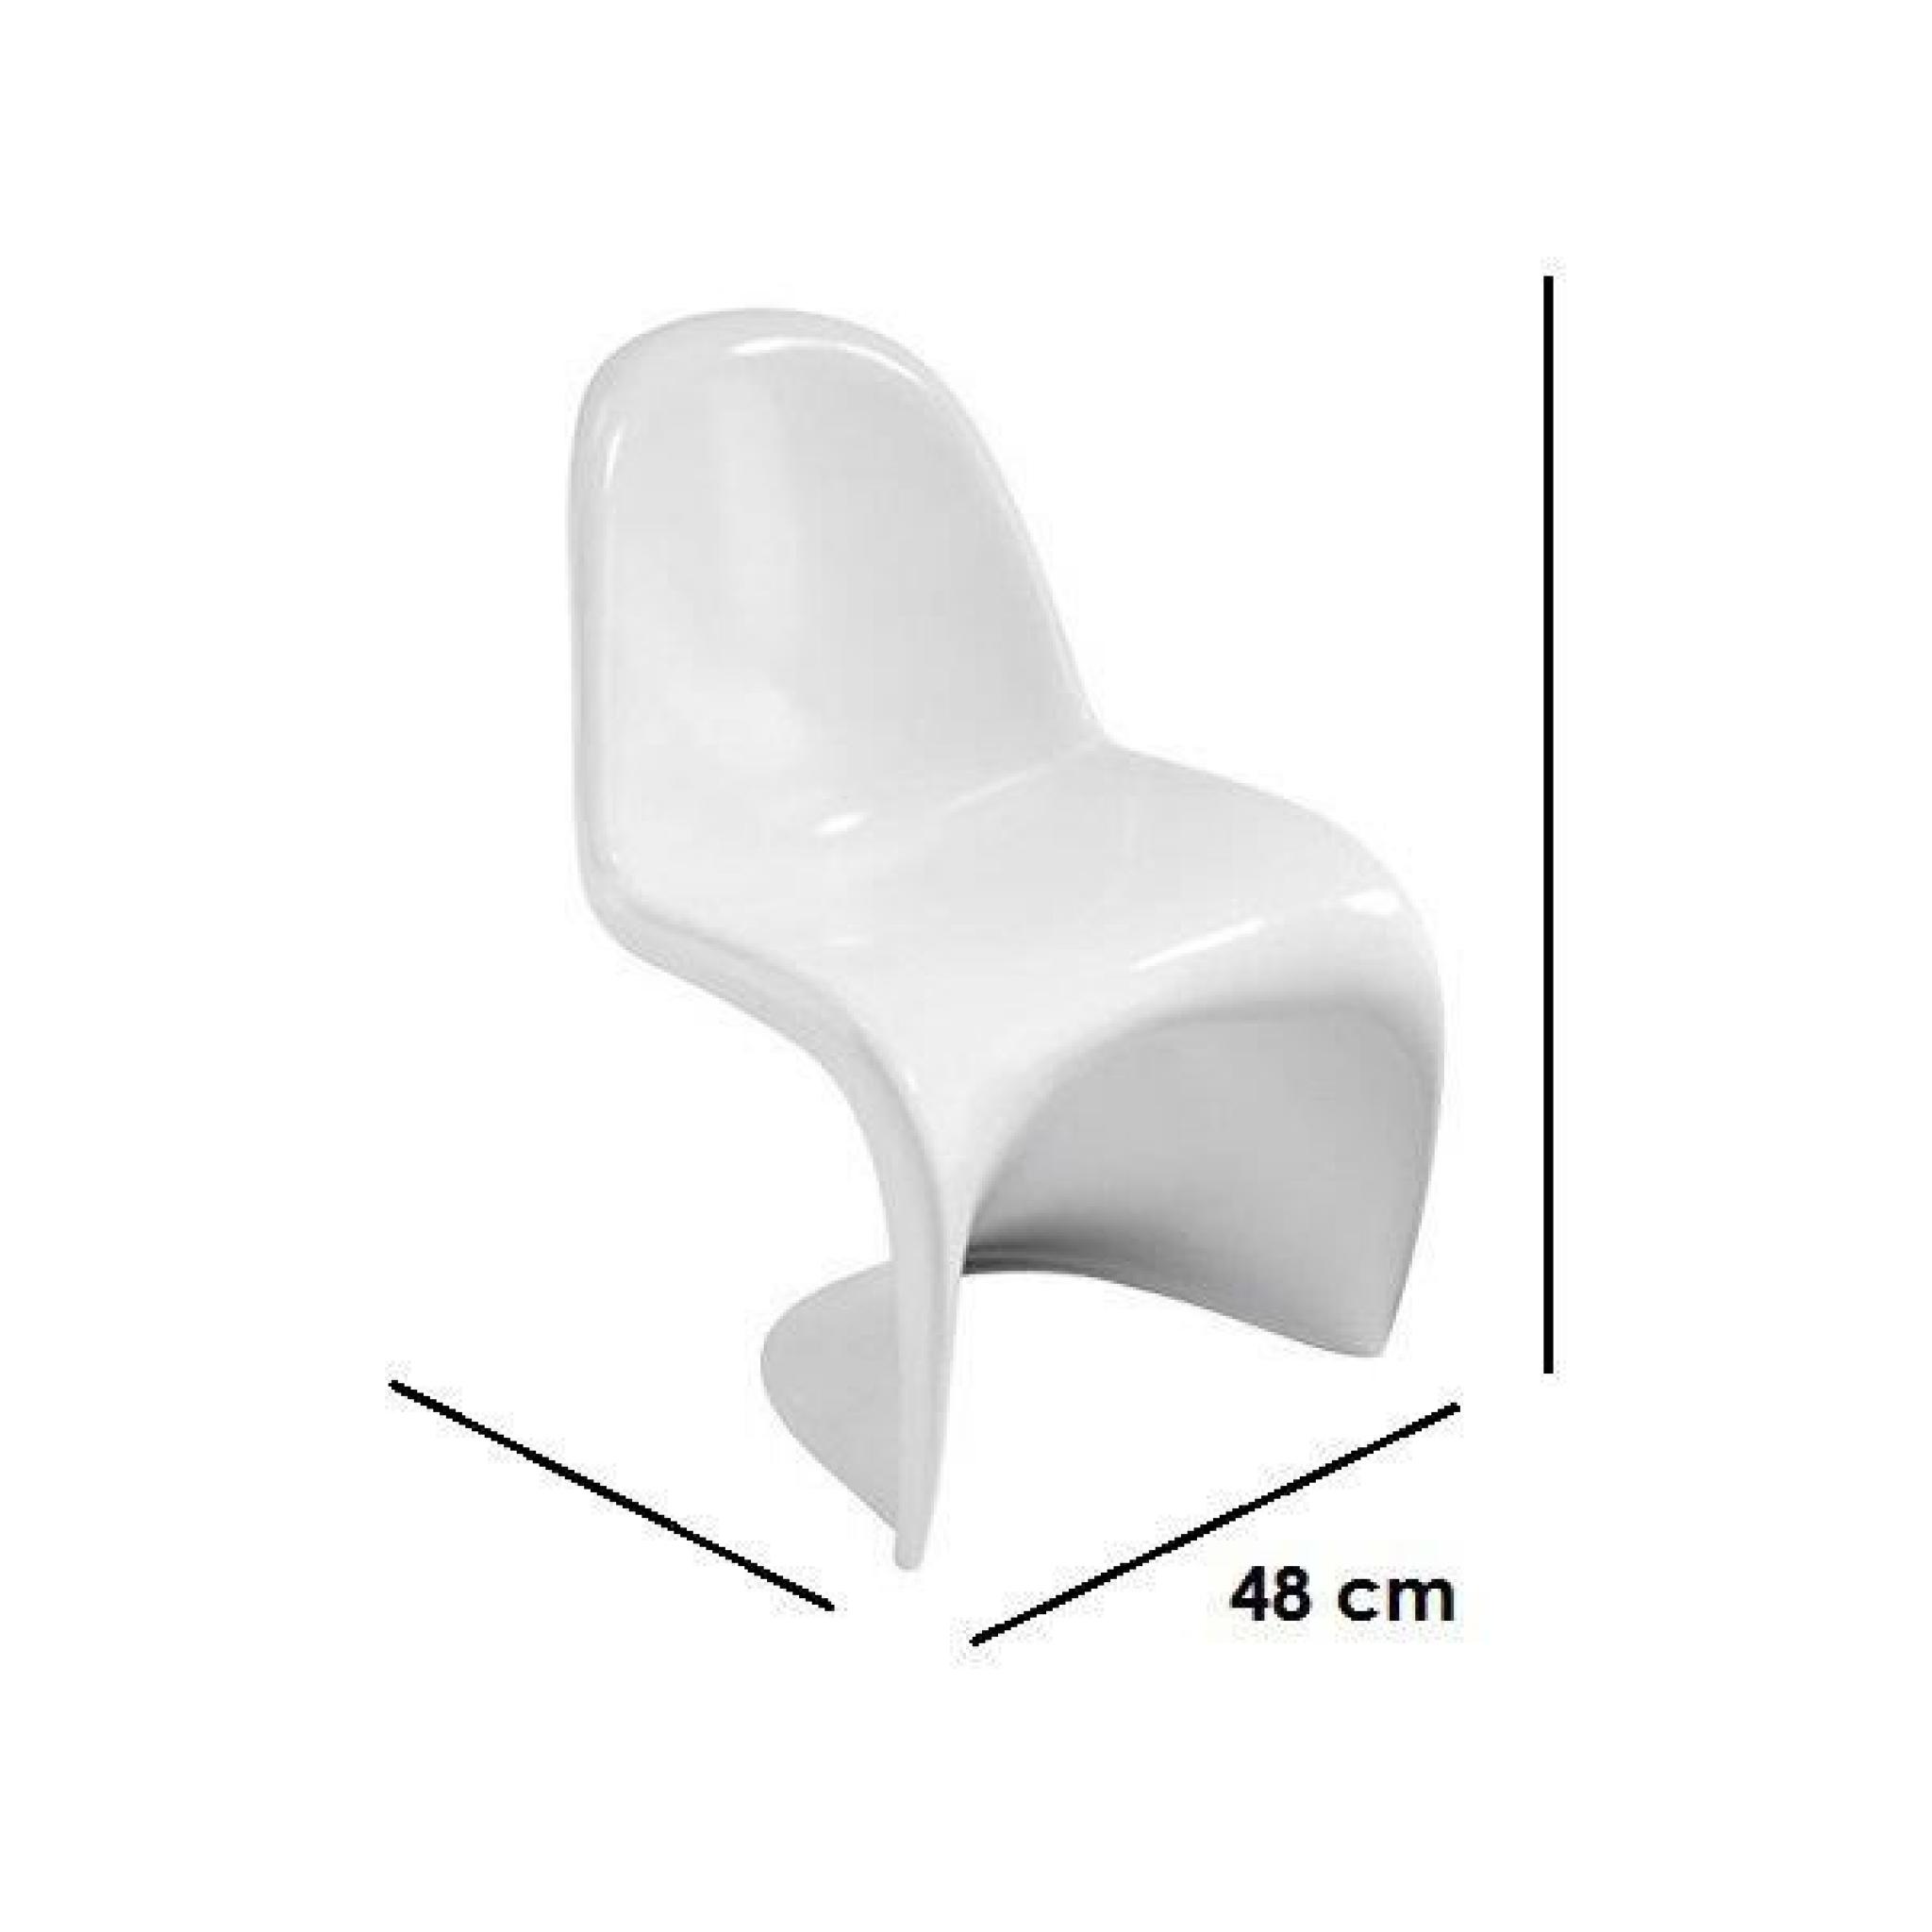 SLASH blanche lot de 2 chaises design empilables pas cher